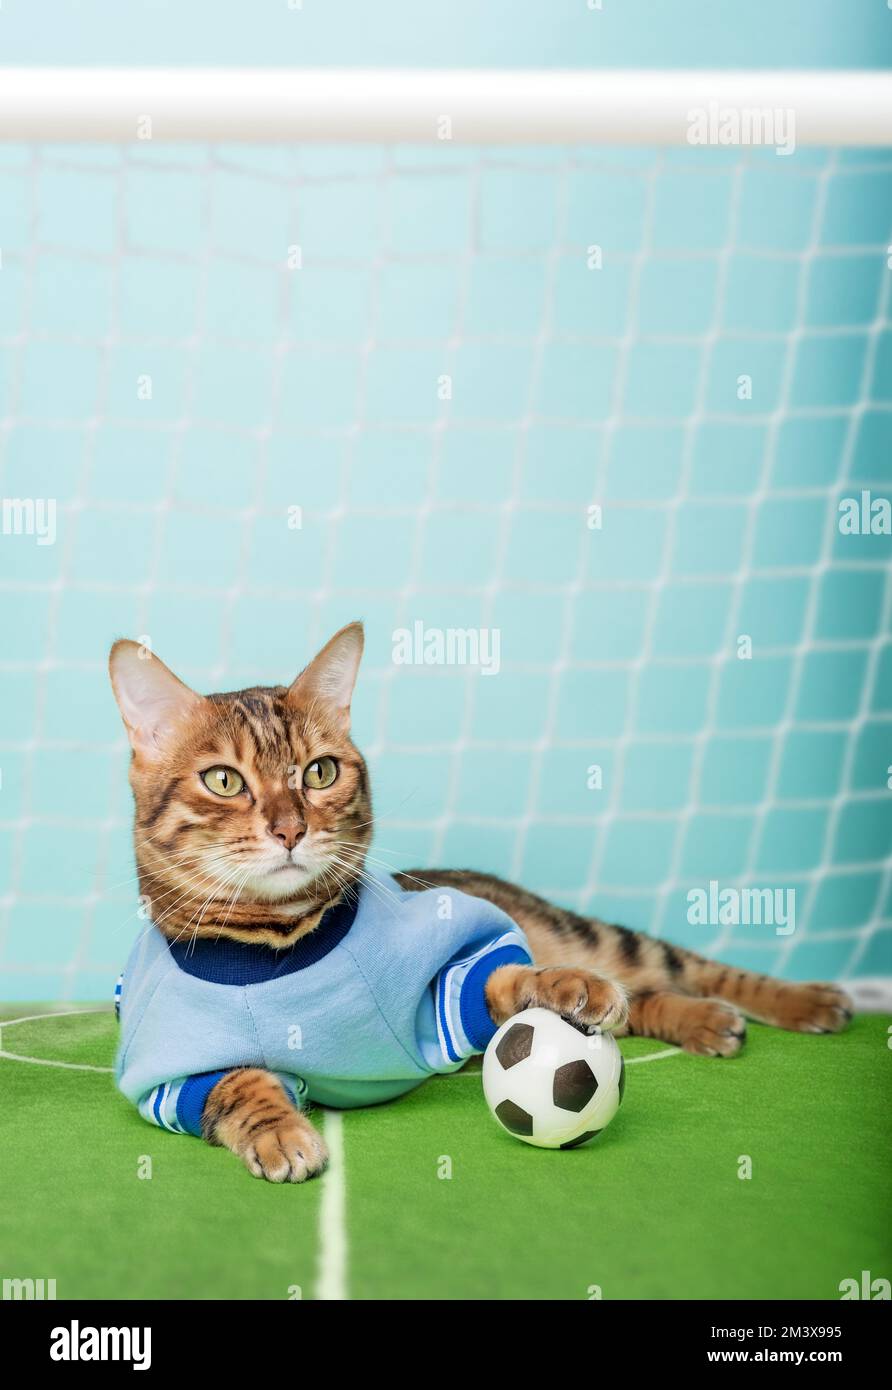 Die bengalische Katze mit einem Fußball sitzt auf dem Fußballfeld in der  Nähe des Tores. Die Katze ist Torwart Stockfotografie - Alamy